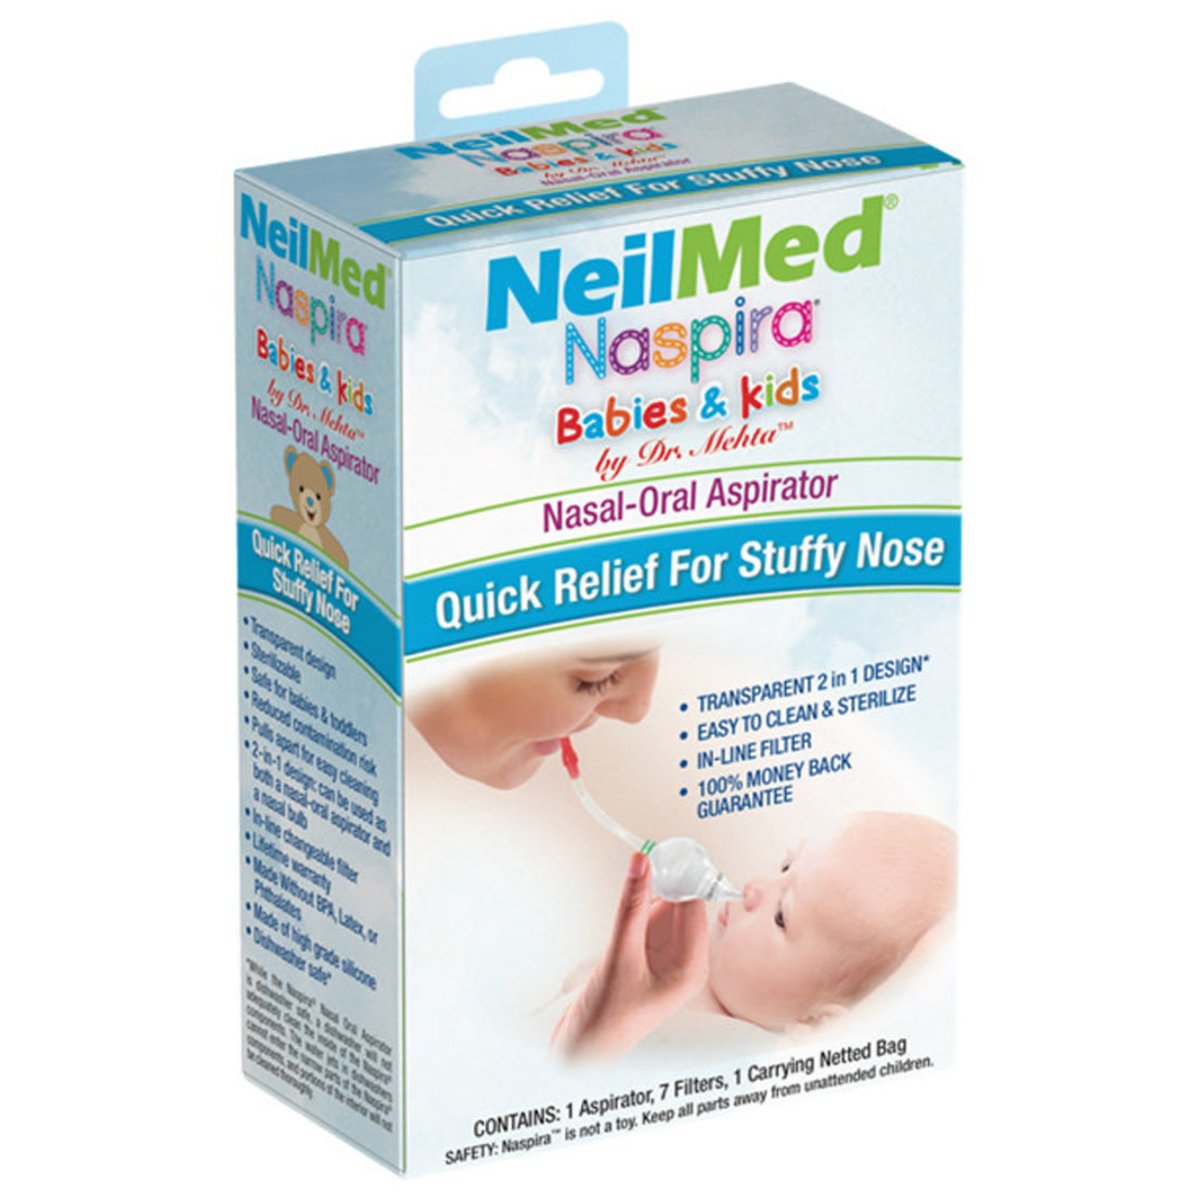 NeilMed NeilMed Naspira Babies & Kids Nasal & Oral Aspirator Ρινικός Αναρροφητήρας για Βρέφη & Παιδιά 1 Τεμάχιο